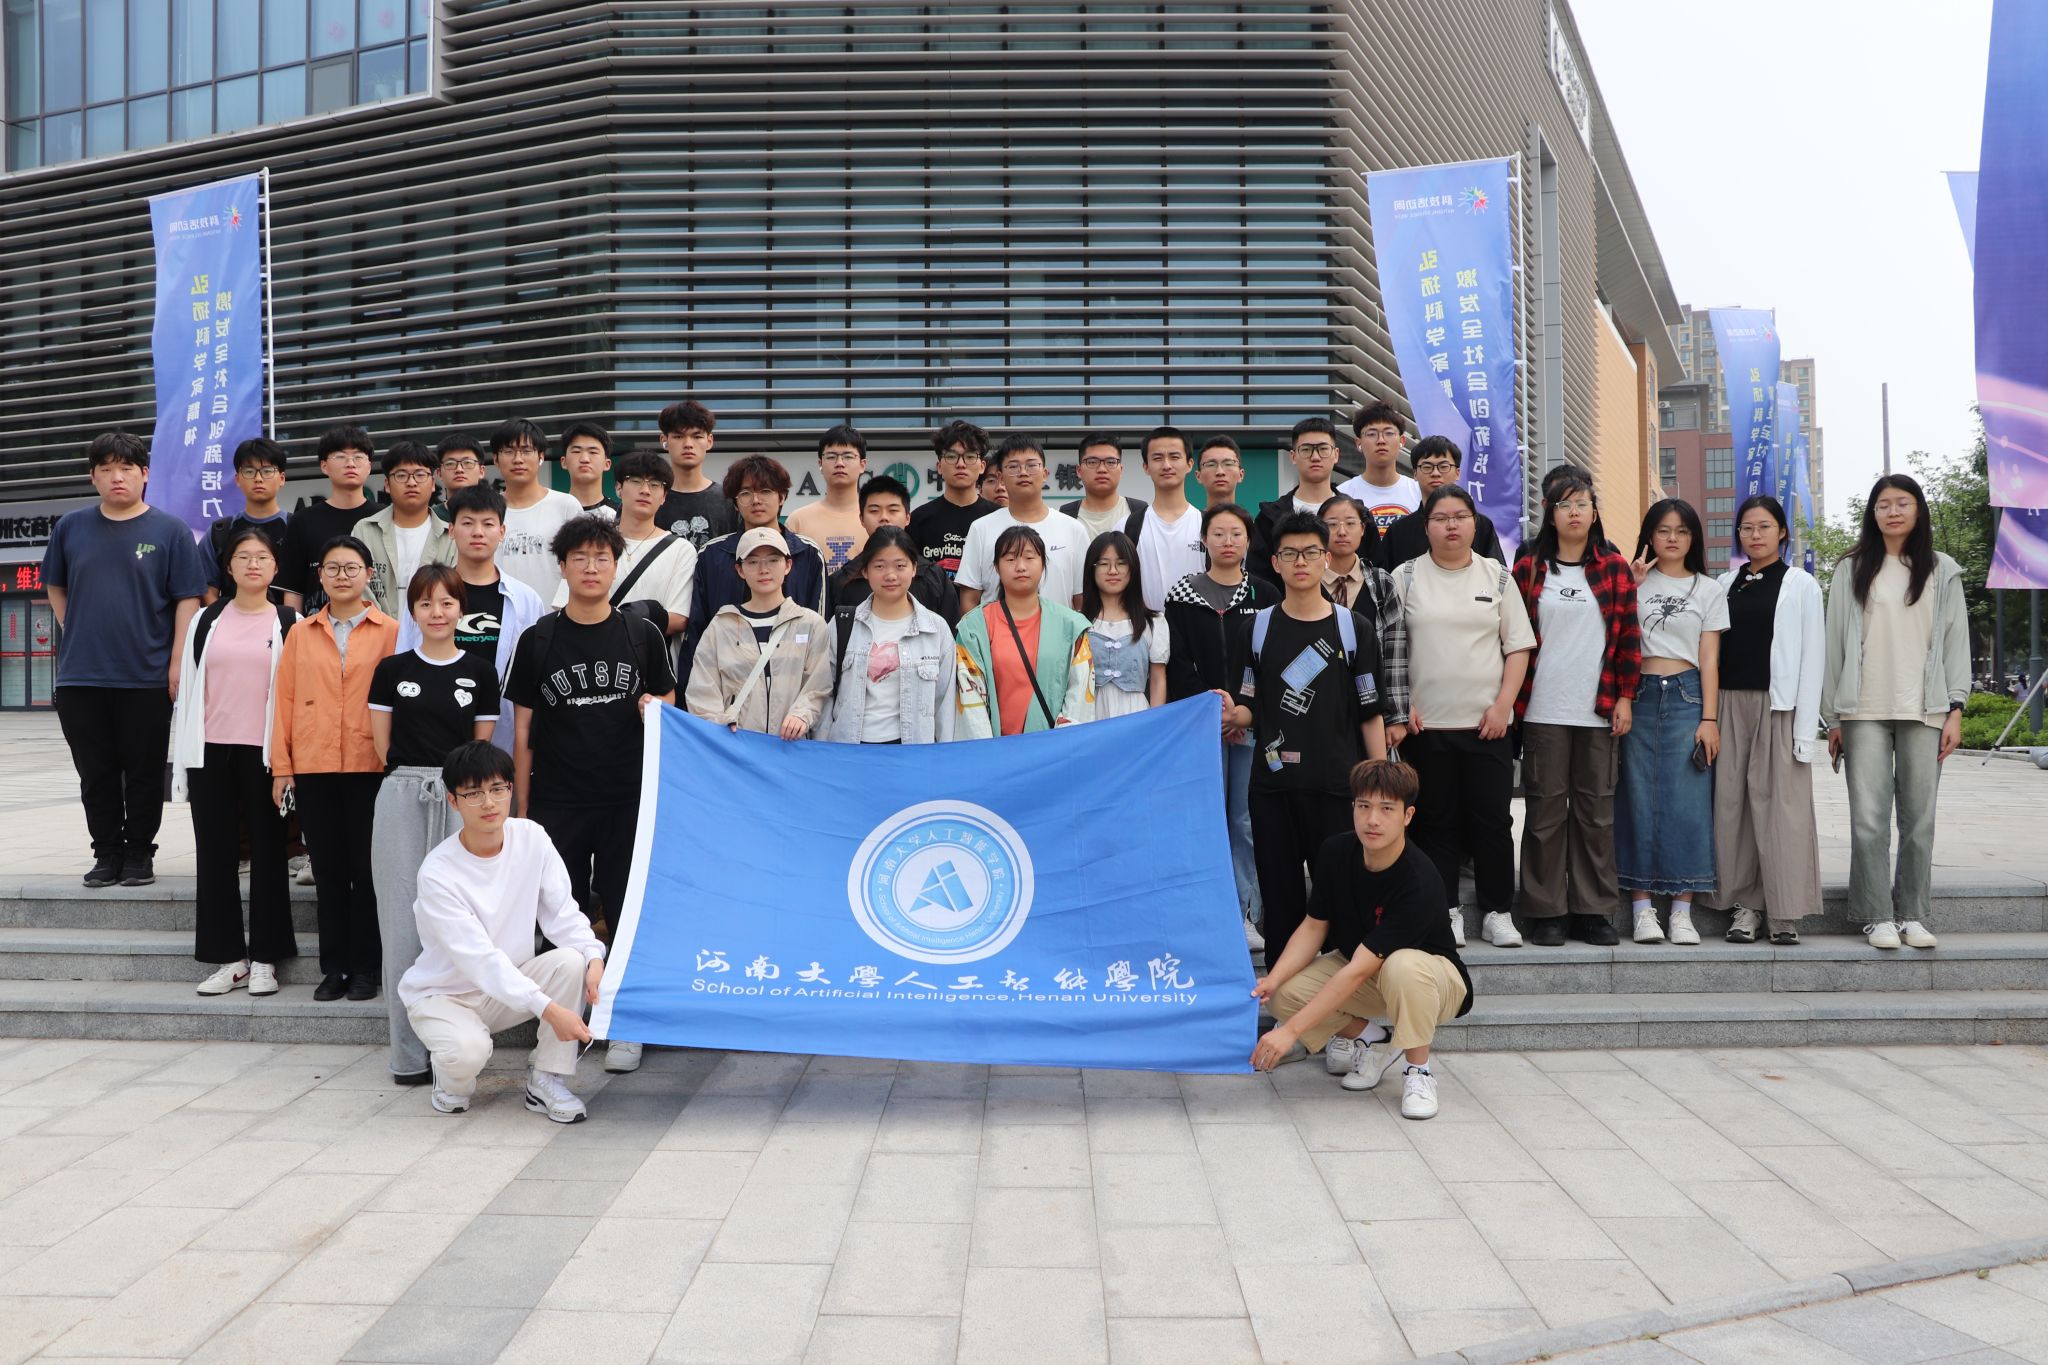 人工智能学院组织学生参加郑州市科技活动周并举办主题团日活动